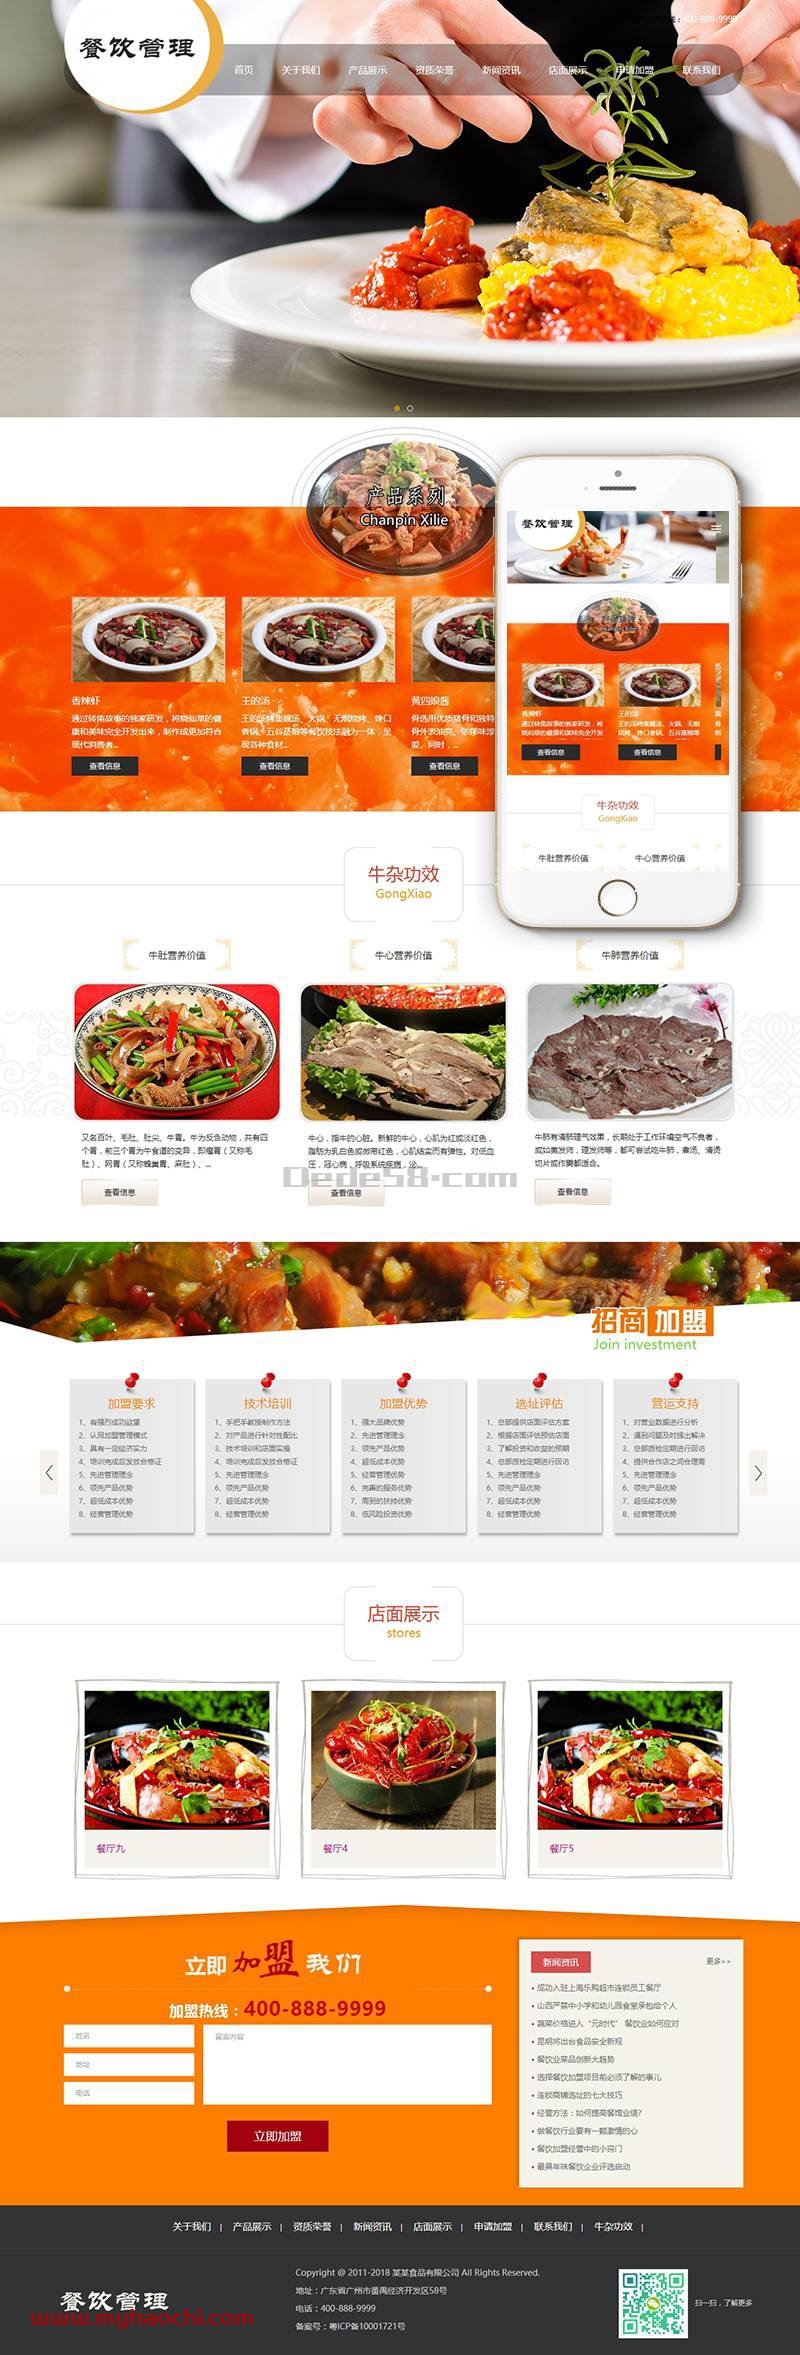 响应式餐饮牛杂小吃类网站源码 dedecms织梦模板 (带手机端)